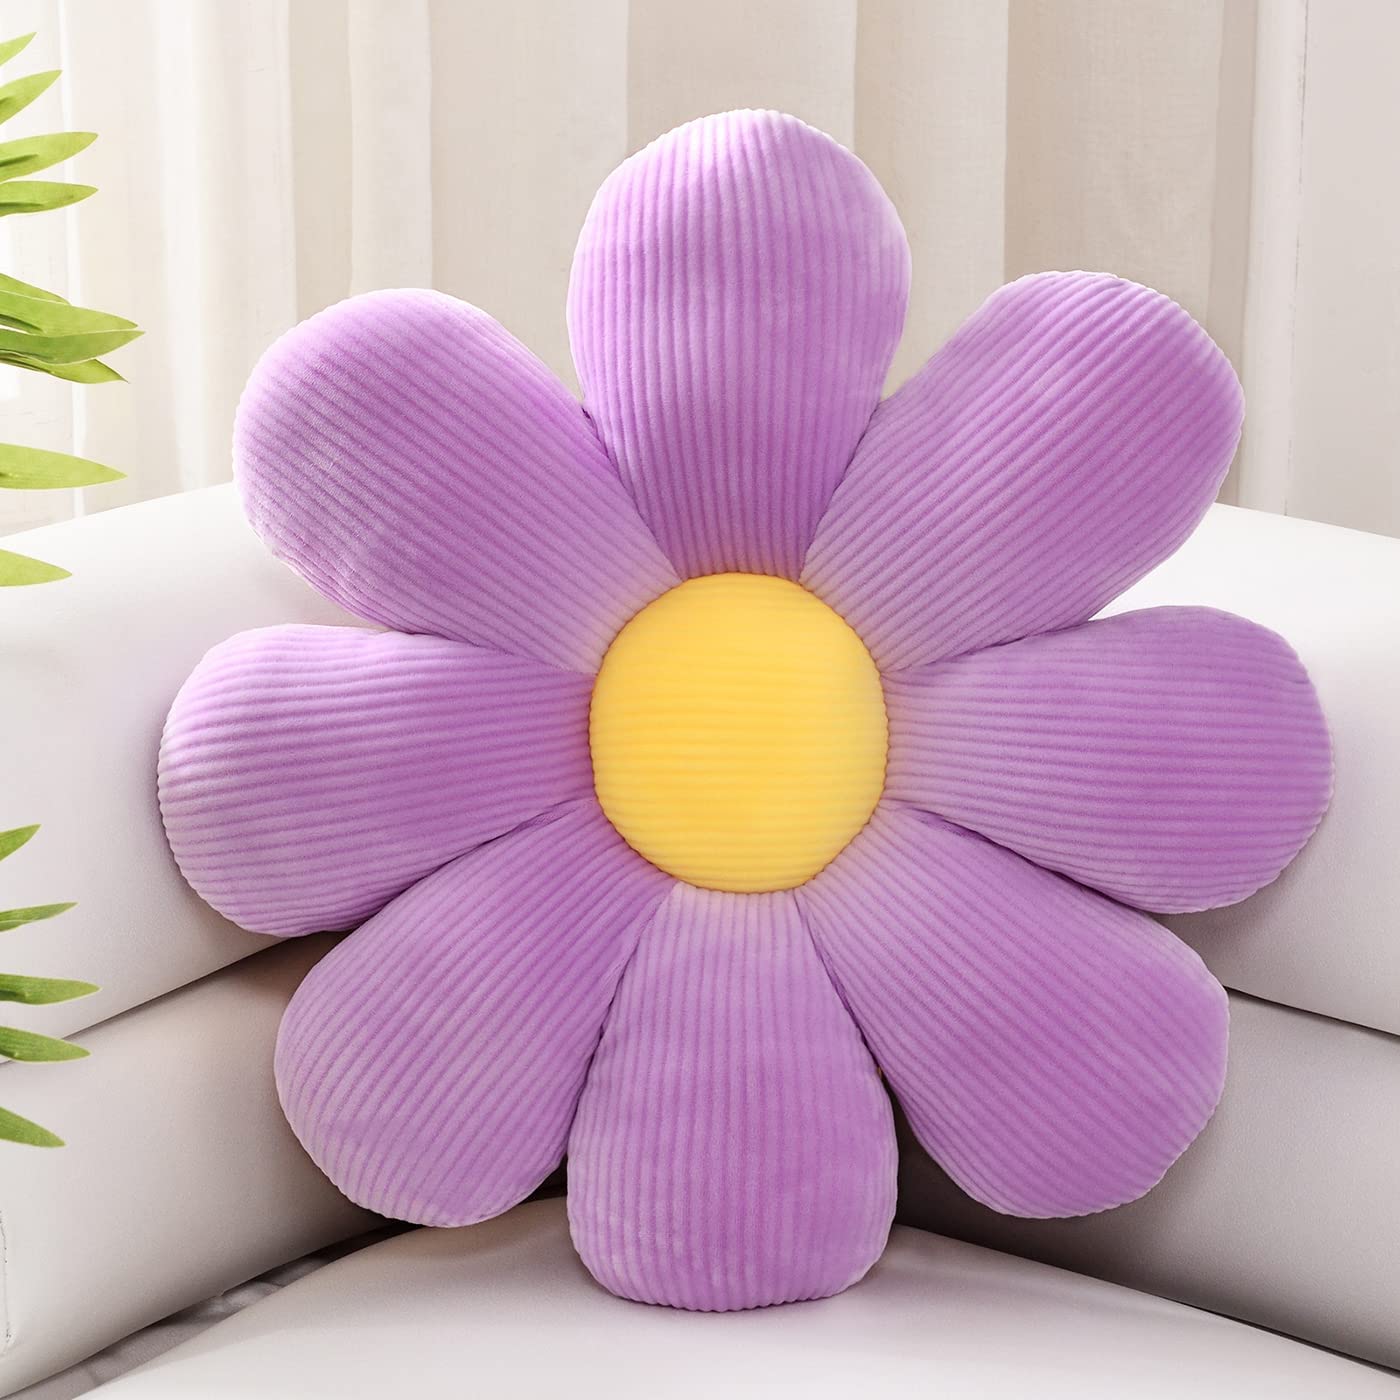 Çiçek şeklindeki yastık poposu yastık çiçek zemin yastık yastık yastığı küçük papatya yastığı yastık yumuşak çörek pencere backrest çiçek peluş oyuncak